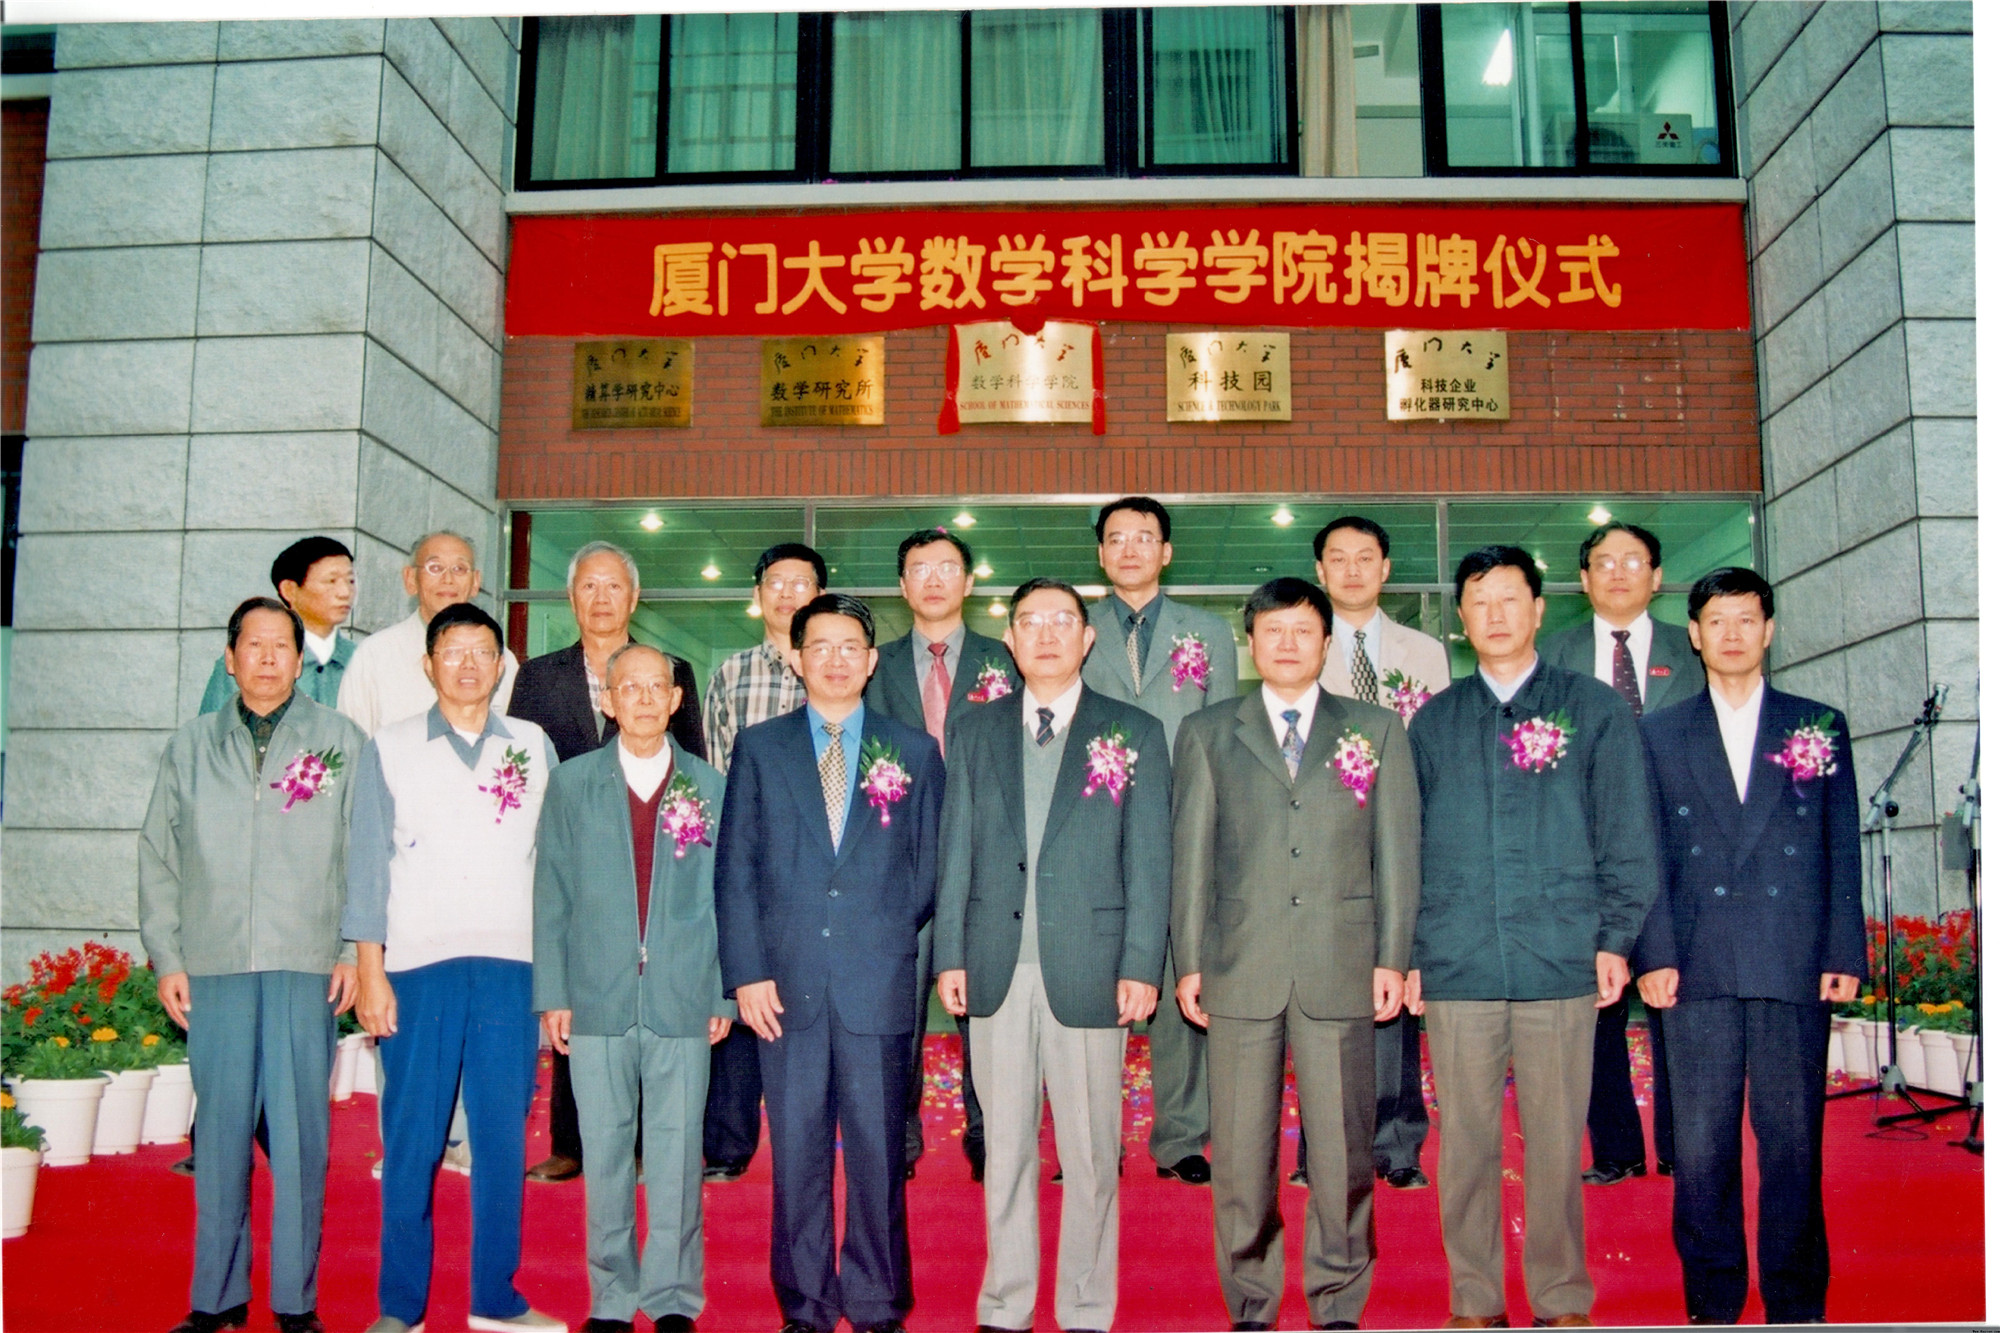 2003年12月5日学院成立揭牌仪式